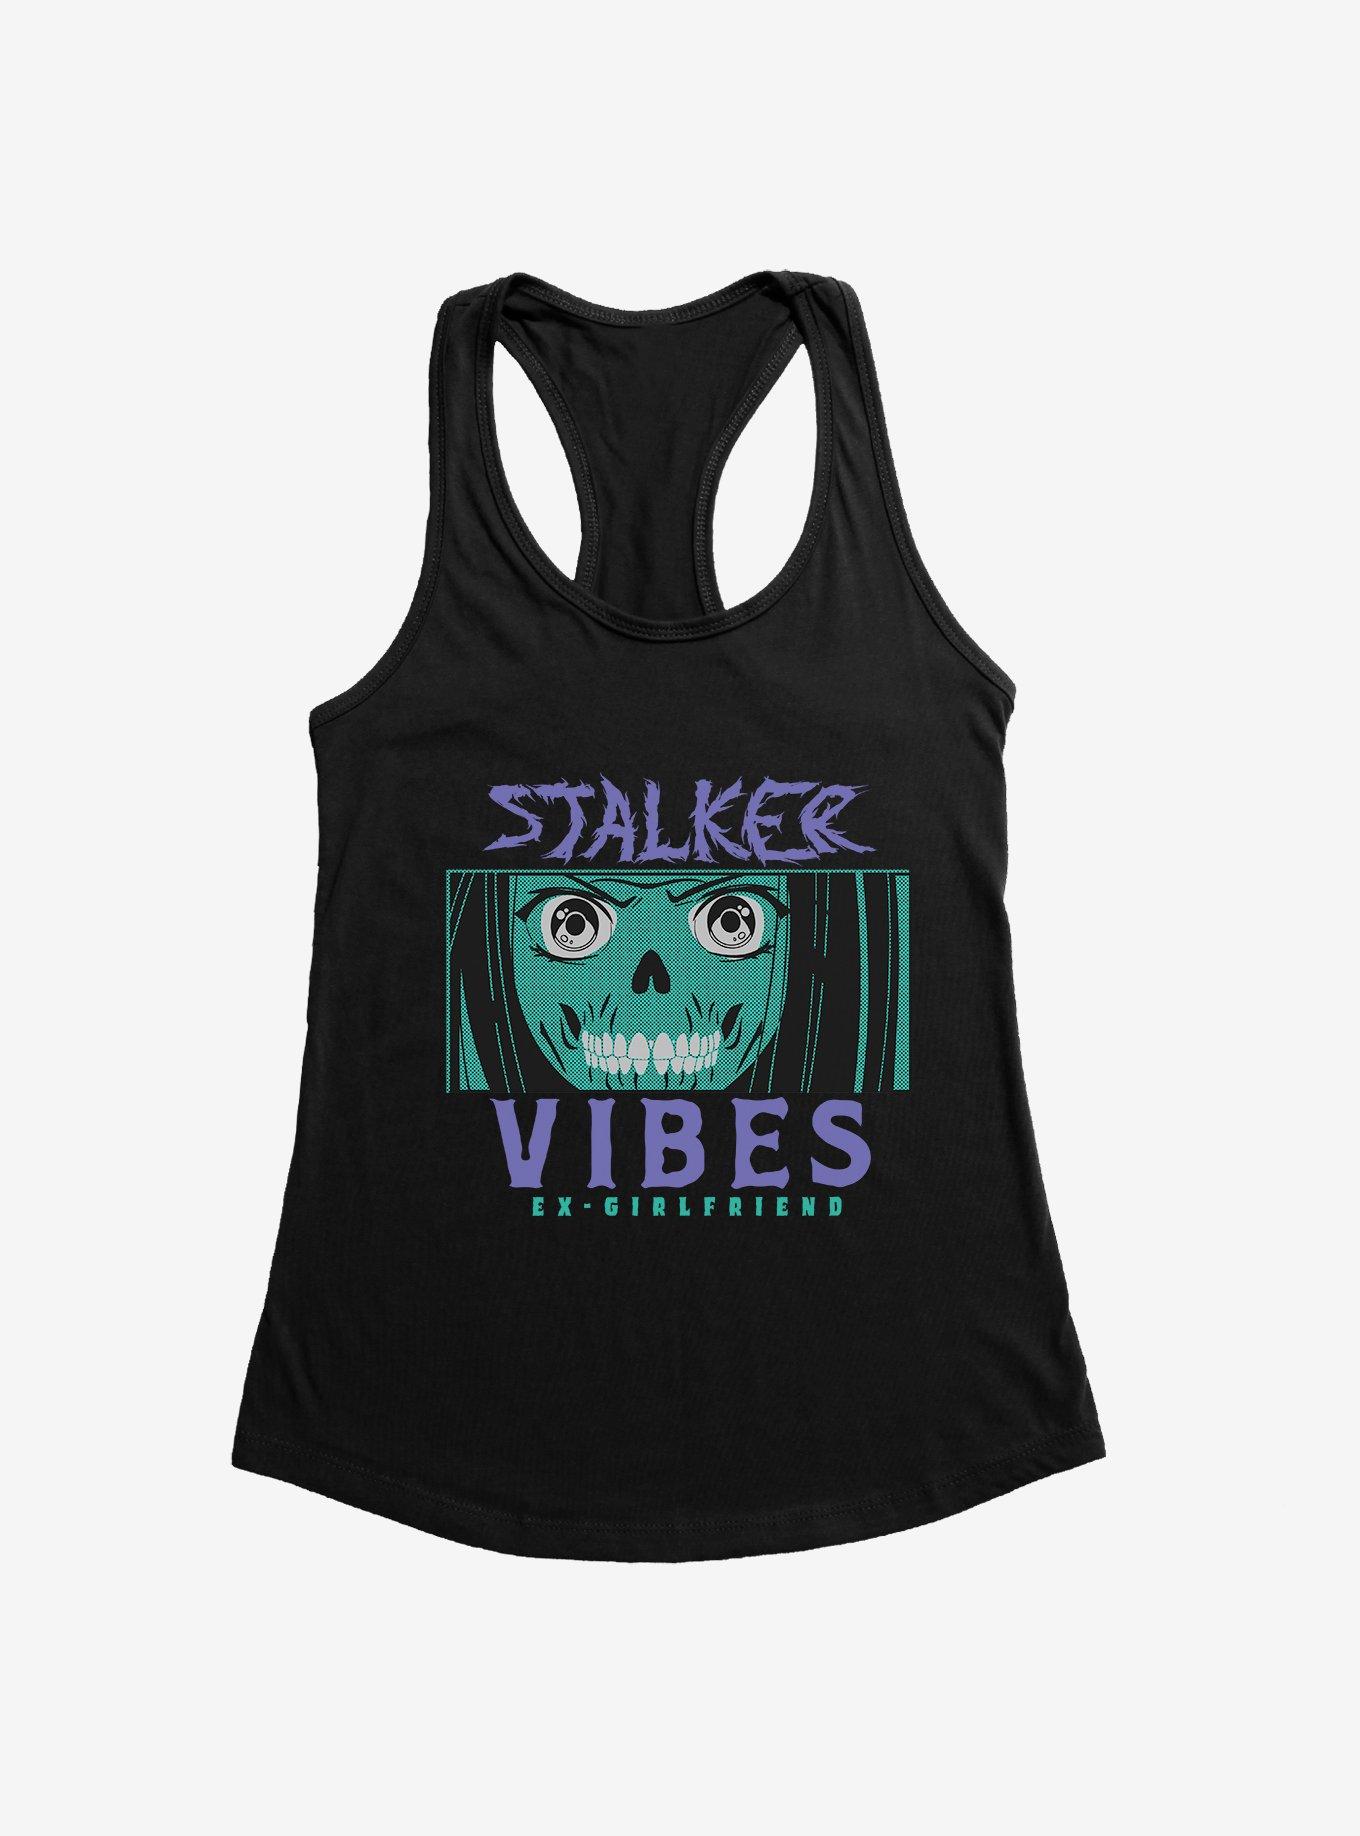 Stalker Vibes Girls Tank